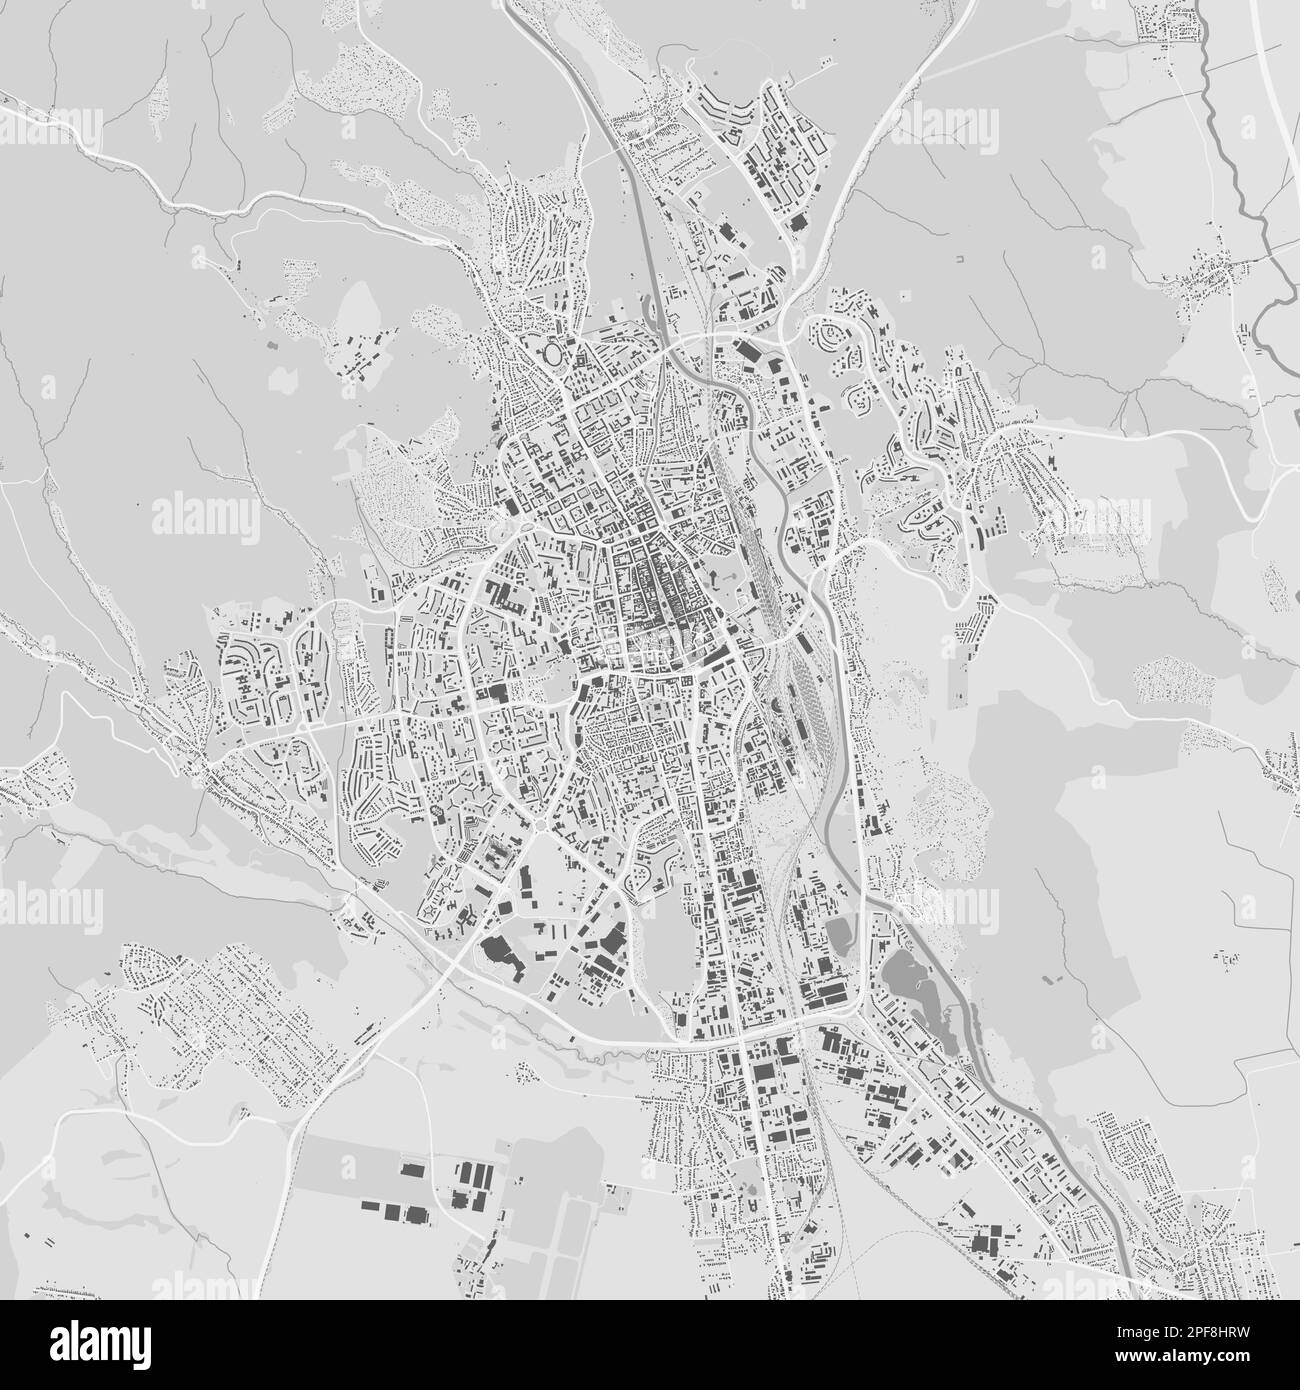 Ciudad urbana mapa vectorial de Kosice. Ilustración vectorial, mapa de Kosice cartel de arte en blanco y negro en escala de grises. imagen de mapa de carreteras con carreteras, ciudad metropolitana ar Ilustración del Vector